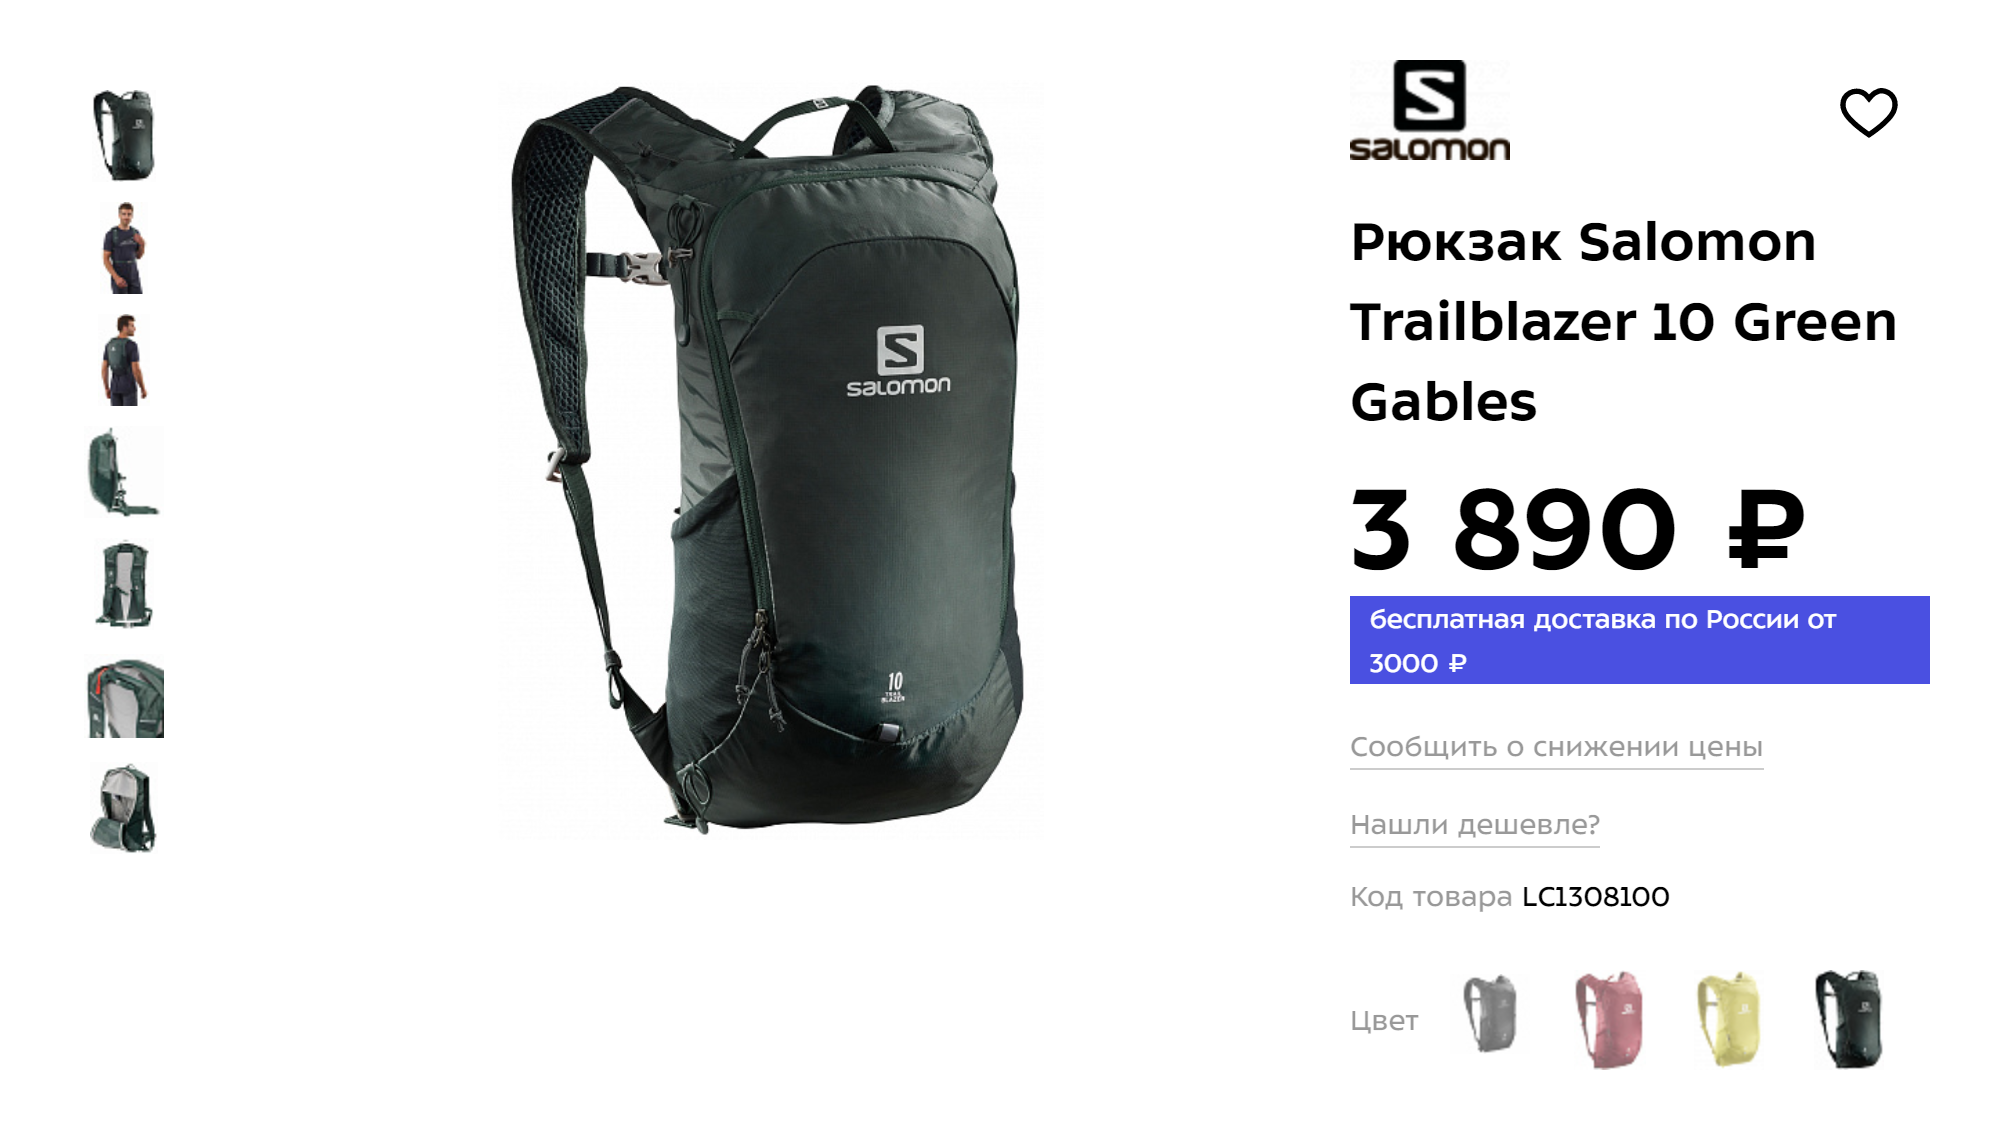 Специальный обтекаемый рюкзак для бега вмещает все необходимое для длительной тренировки. Источник: «Спорт-марафон»